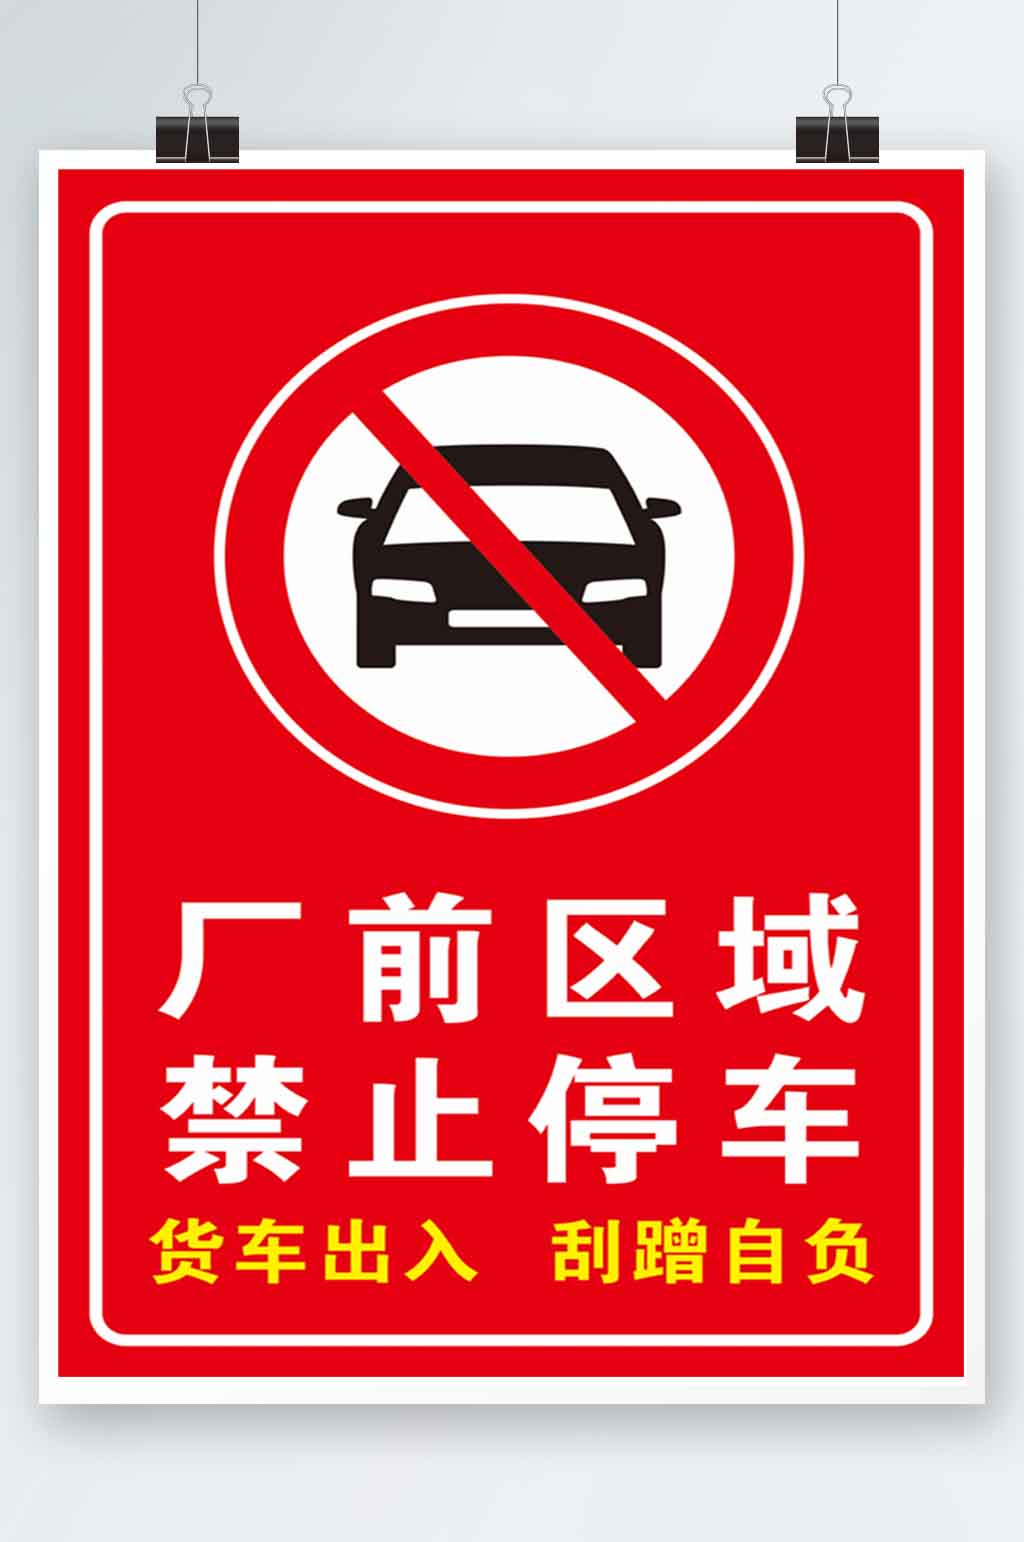 工地门口禁止停车标语图片